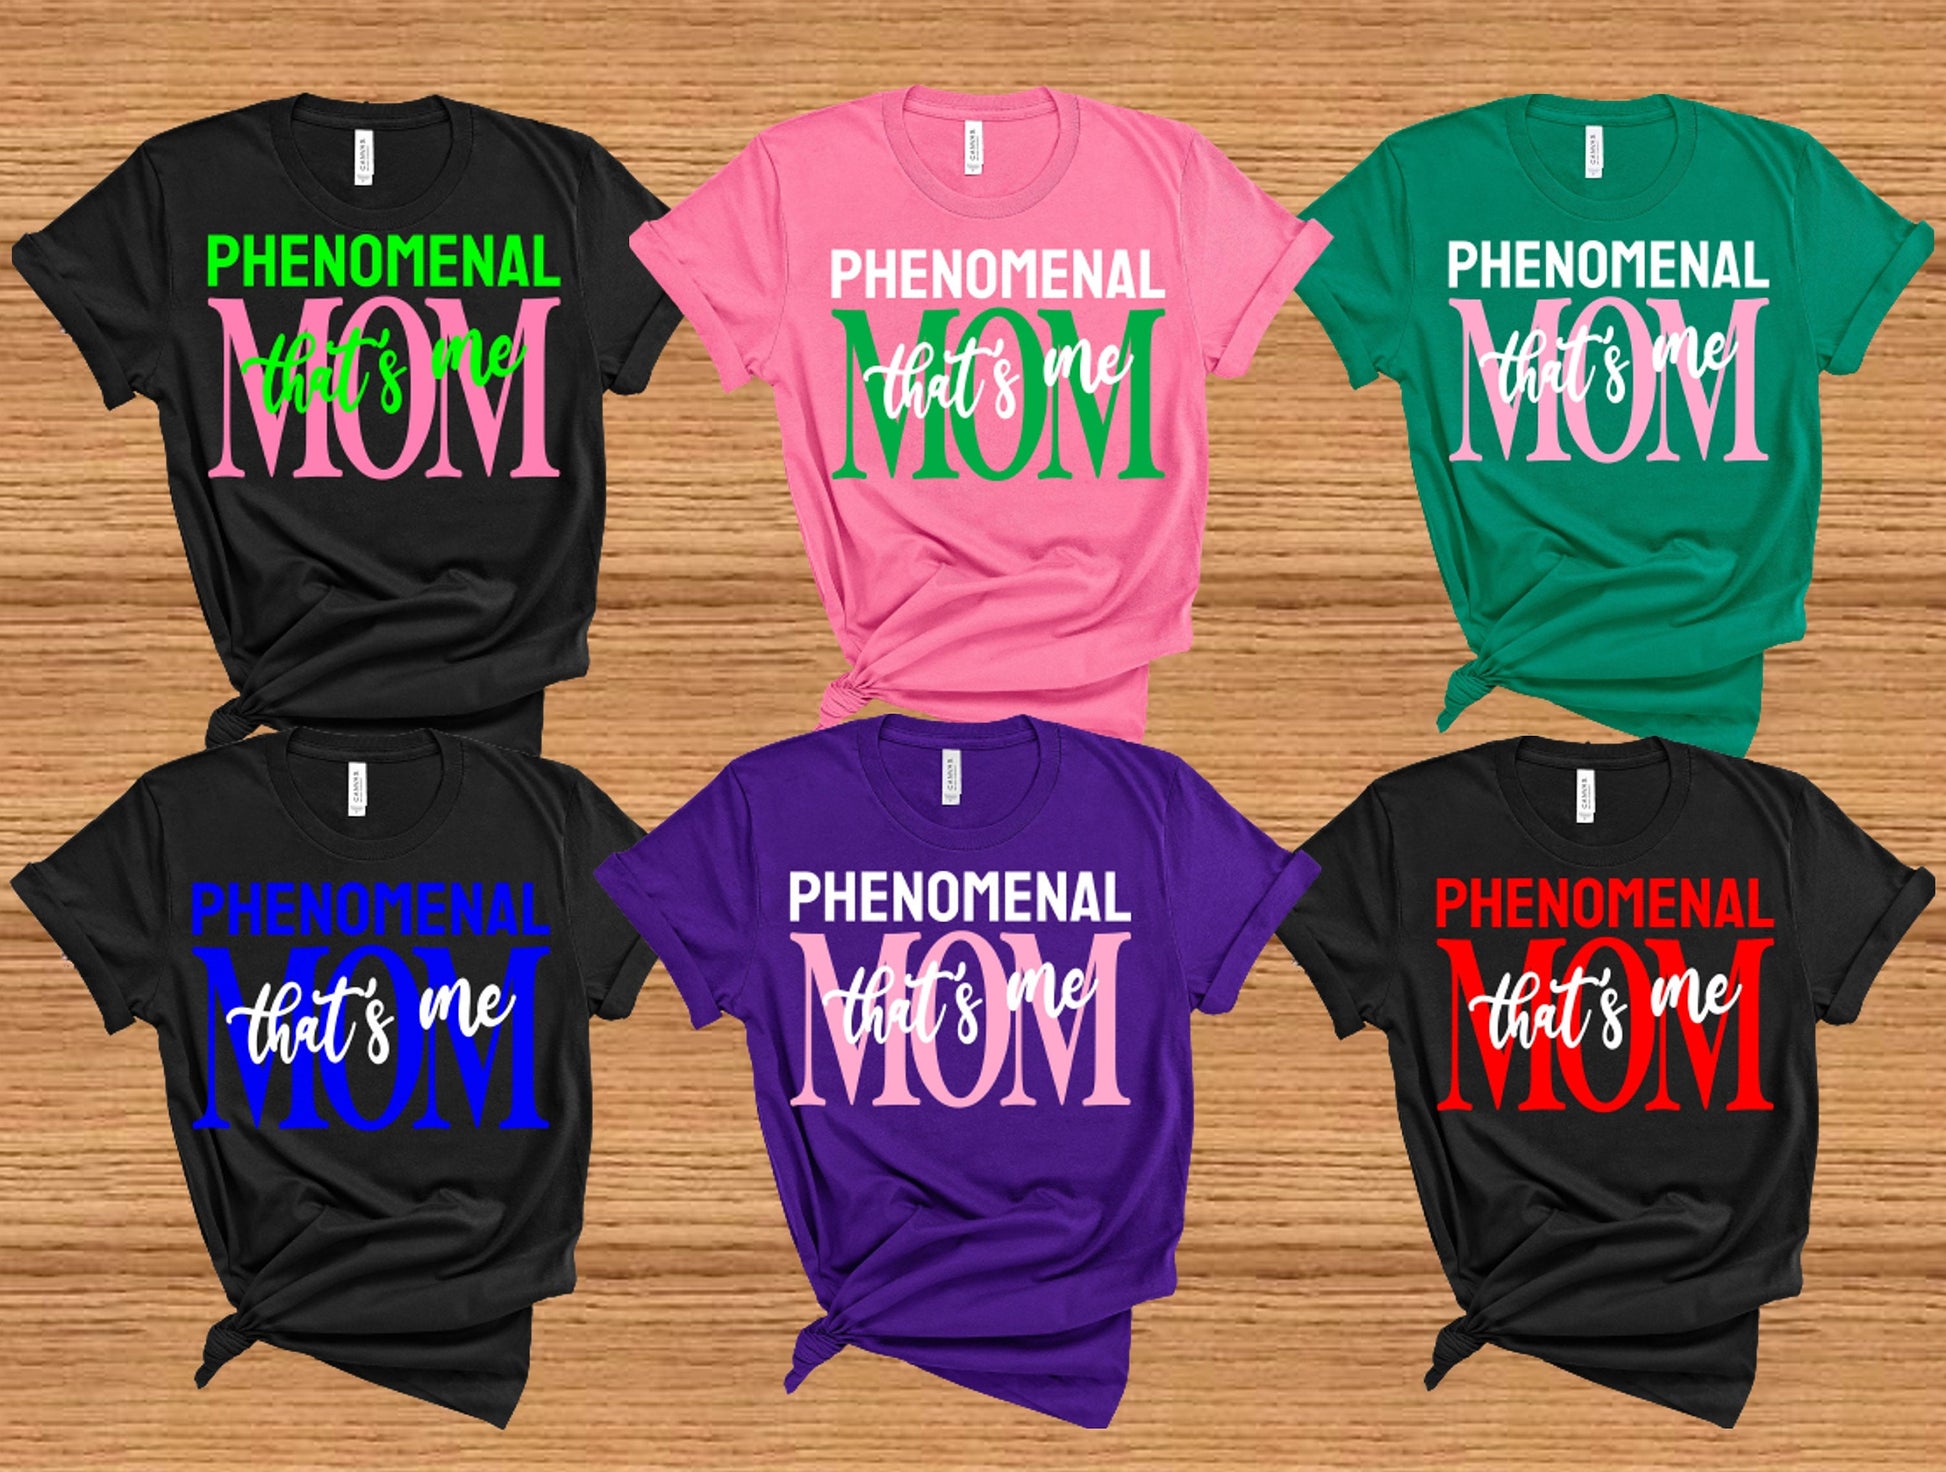 PHENOMENAL MOM TShirts Phenomenal Mom Shirt Mother's Day Gift Ideas Phenomenal Mom Shirts MOM Shirt Cute Shirt Gift Ideas Mothers Day Shirt